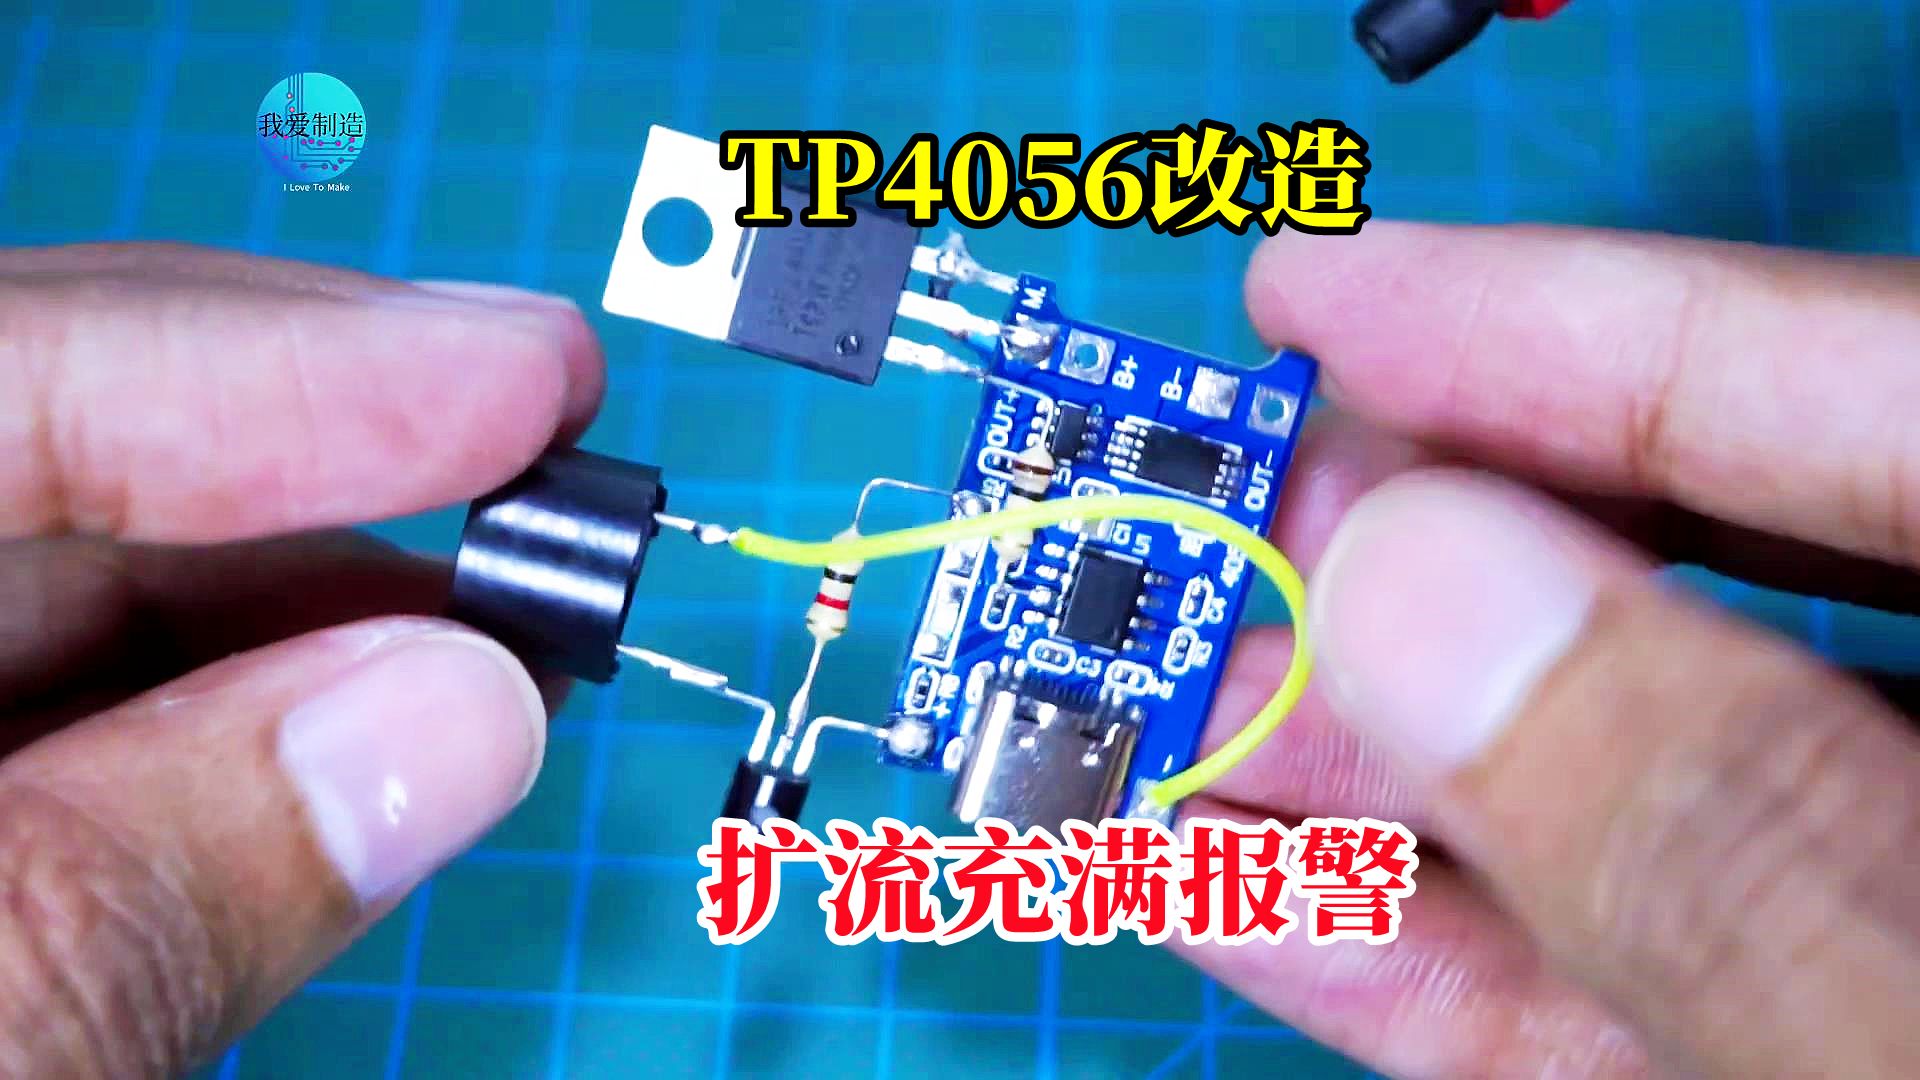 锂电池充电模块TP4056，用晶体管进行改造，实现扩流充满报警功能